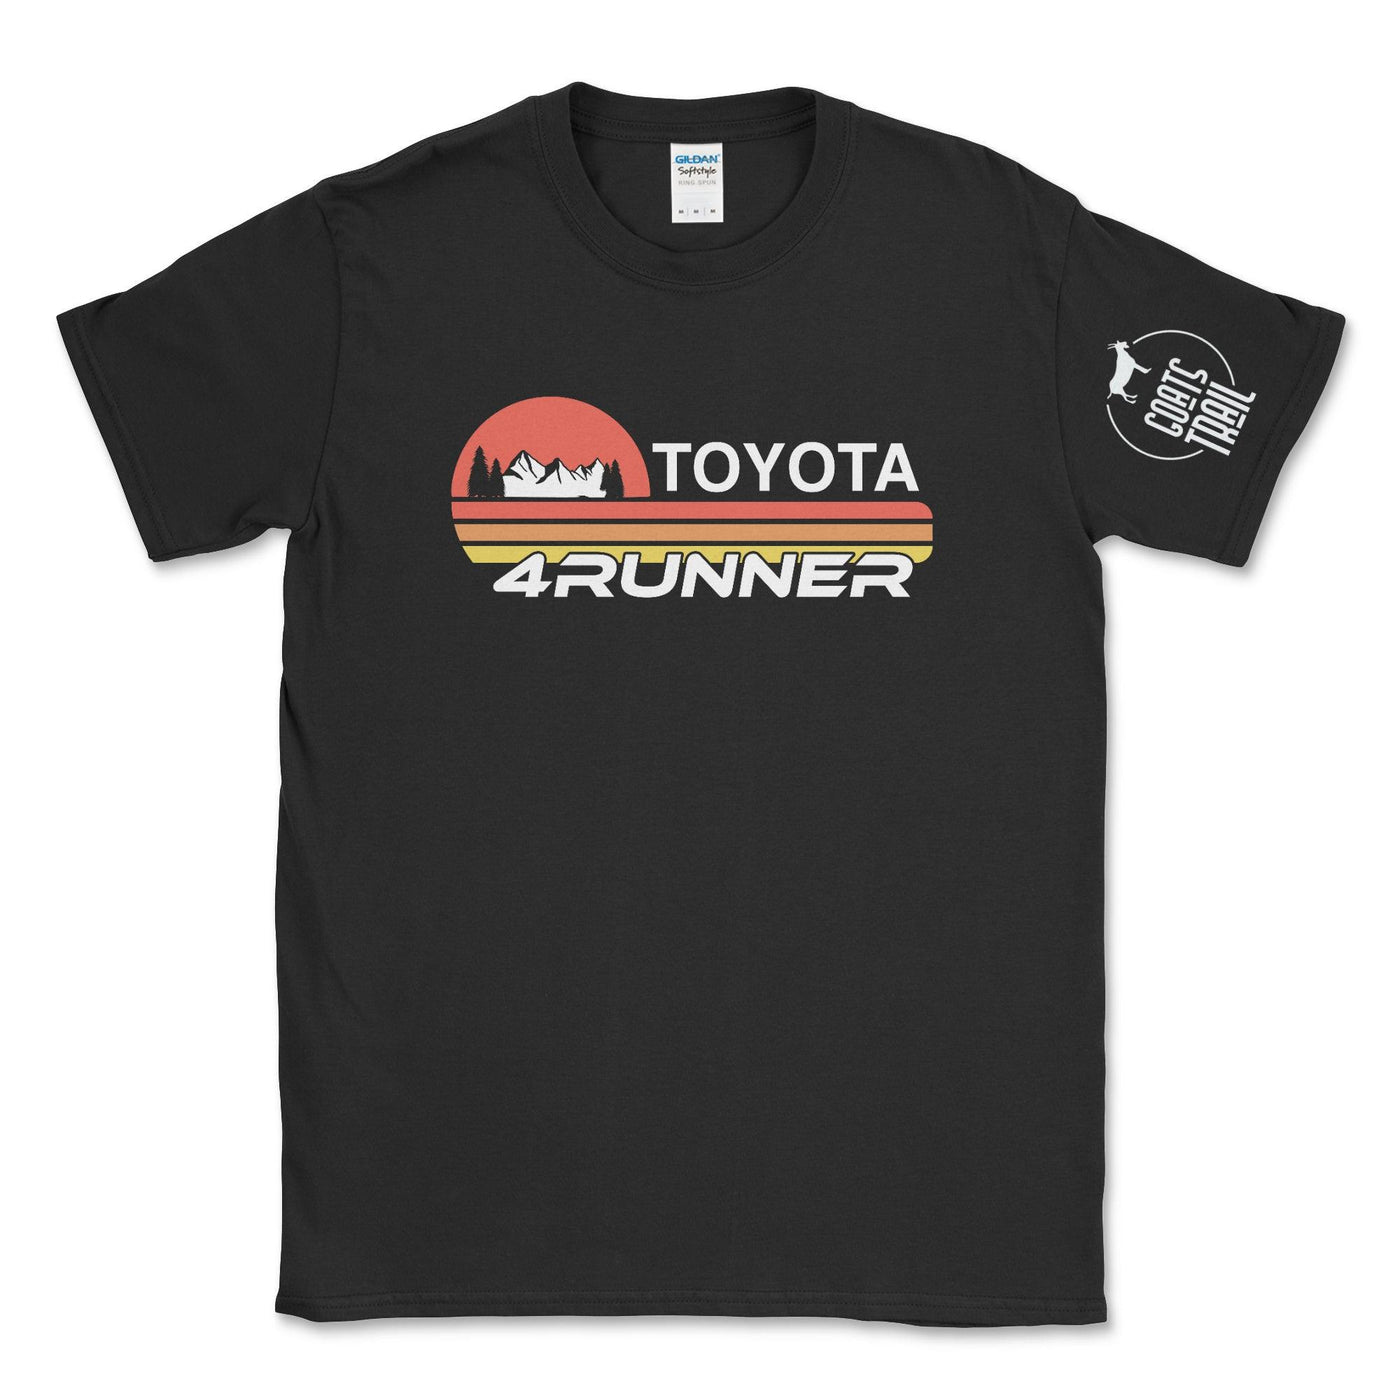 Toyota 4 Runner T-shirt for Kids - Goats Trail